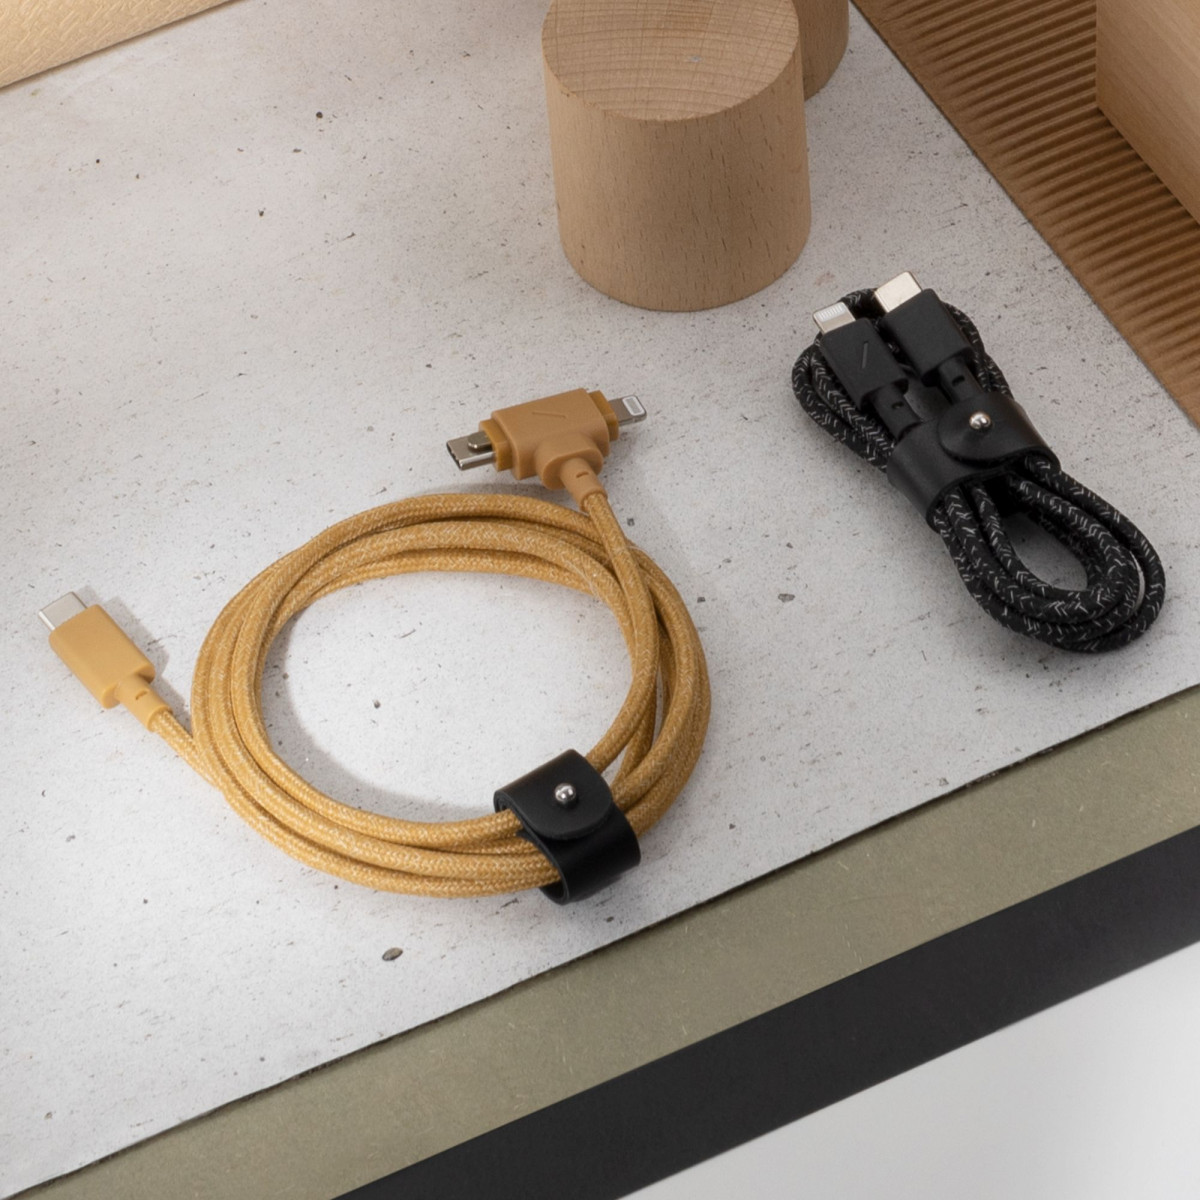 Универсальный кабель Native Union Belt Lightning/USB-C, 1.8 м, Зебра